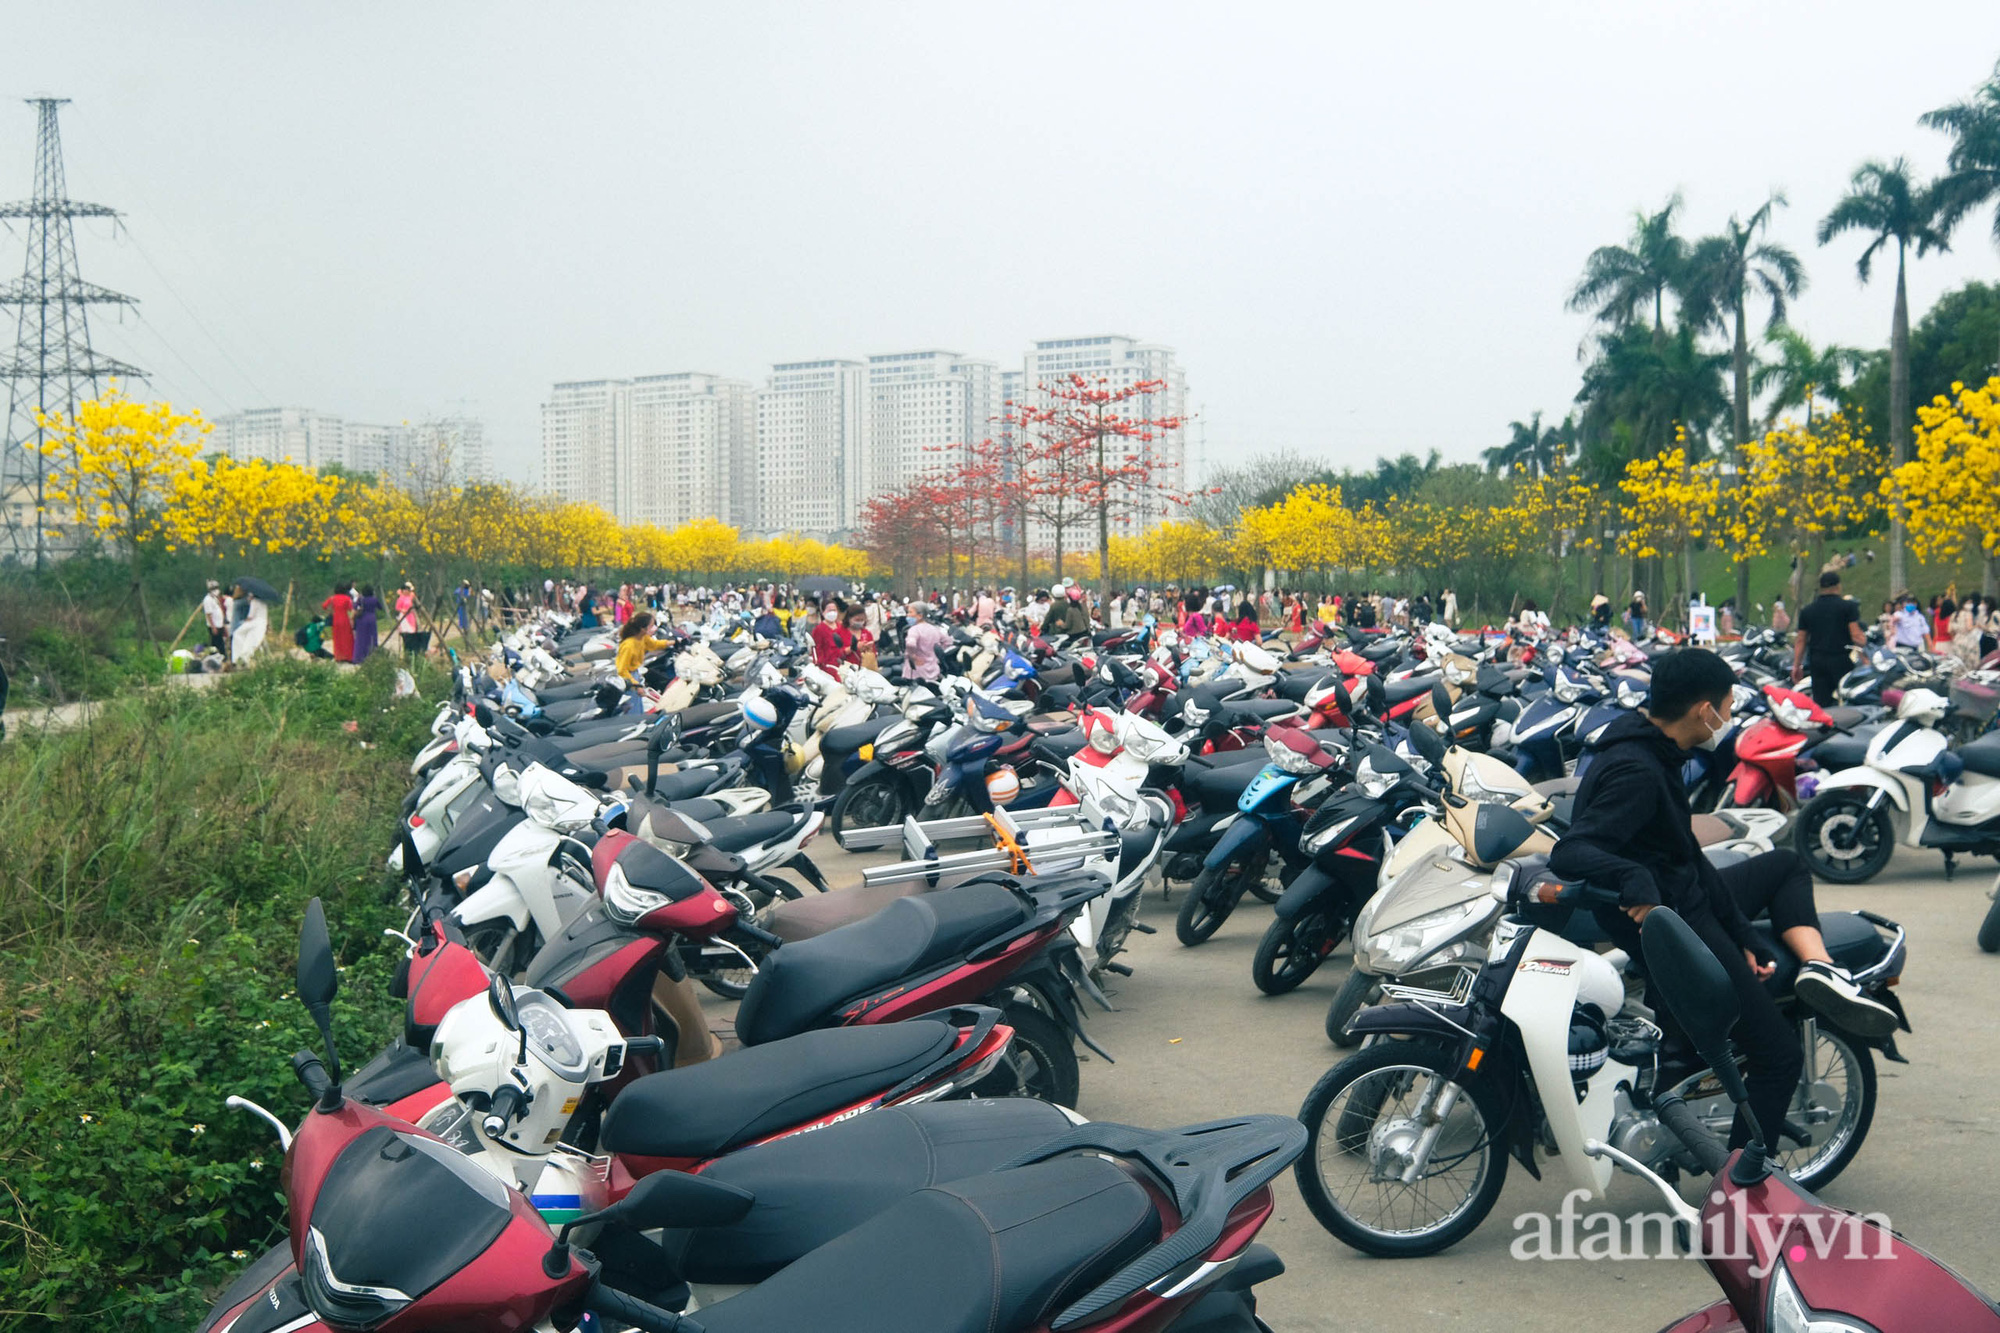 Hà Nội: Hàng nghìn người đổ xô đi chụp ảnh ở đường hoa phong linh, chỗ để xe 